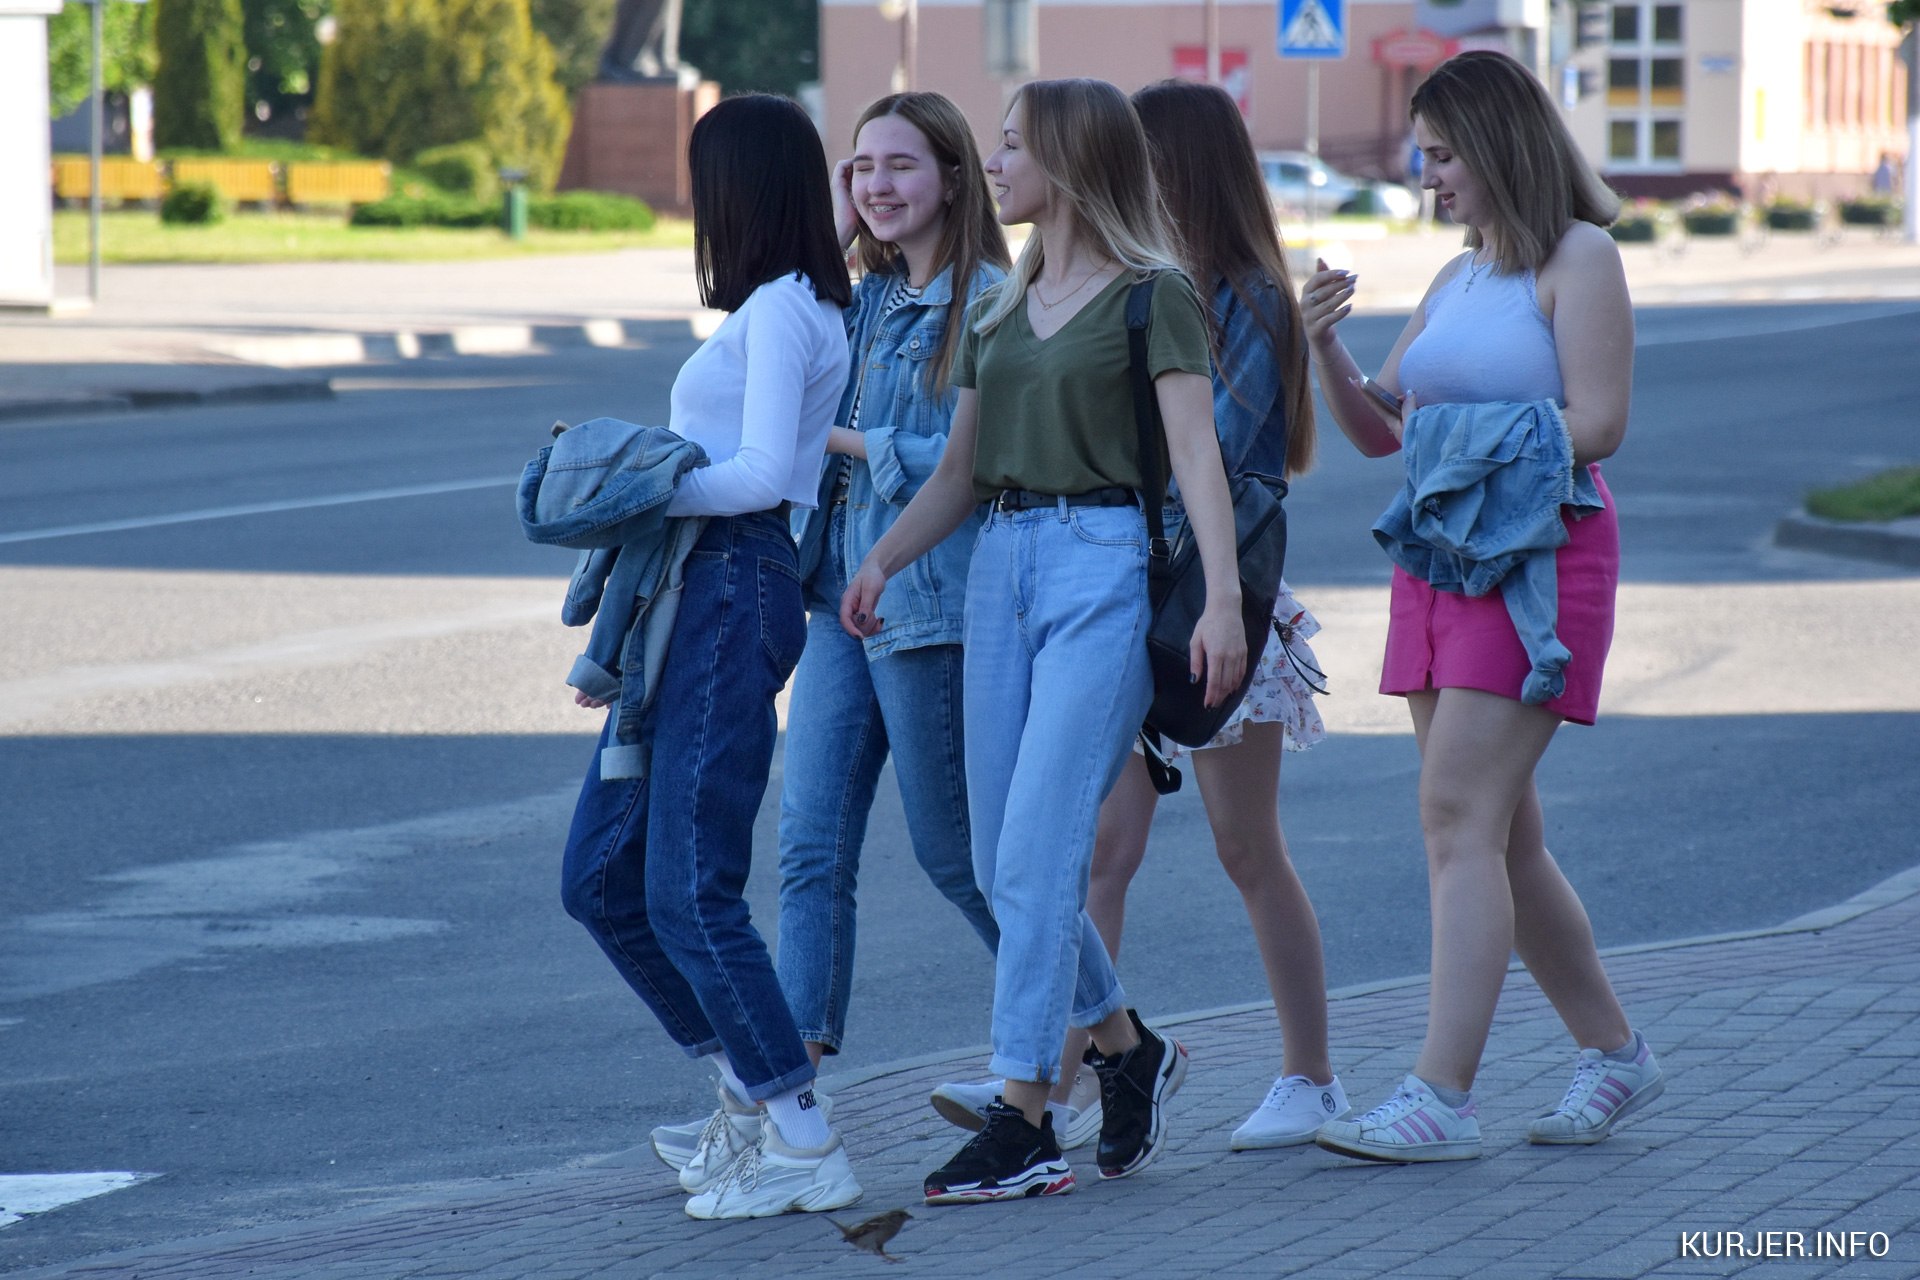 Сегодня подростков. Современная молодежь. Мода молодежи. Девочки подростки на улице. Во что одевается современная молодежь.